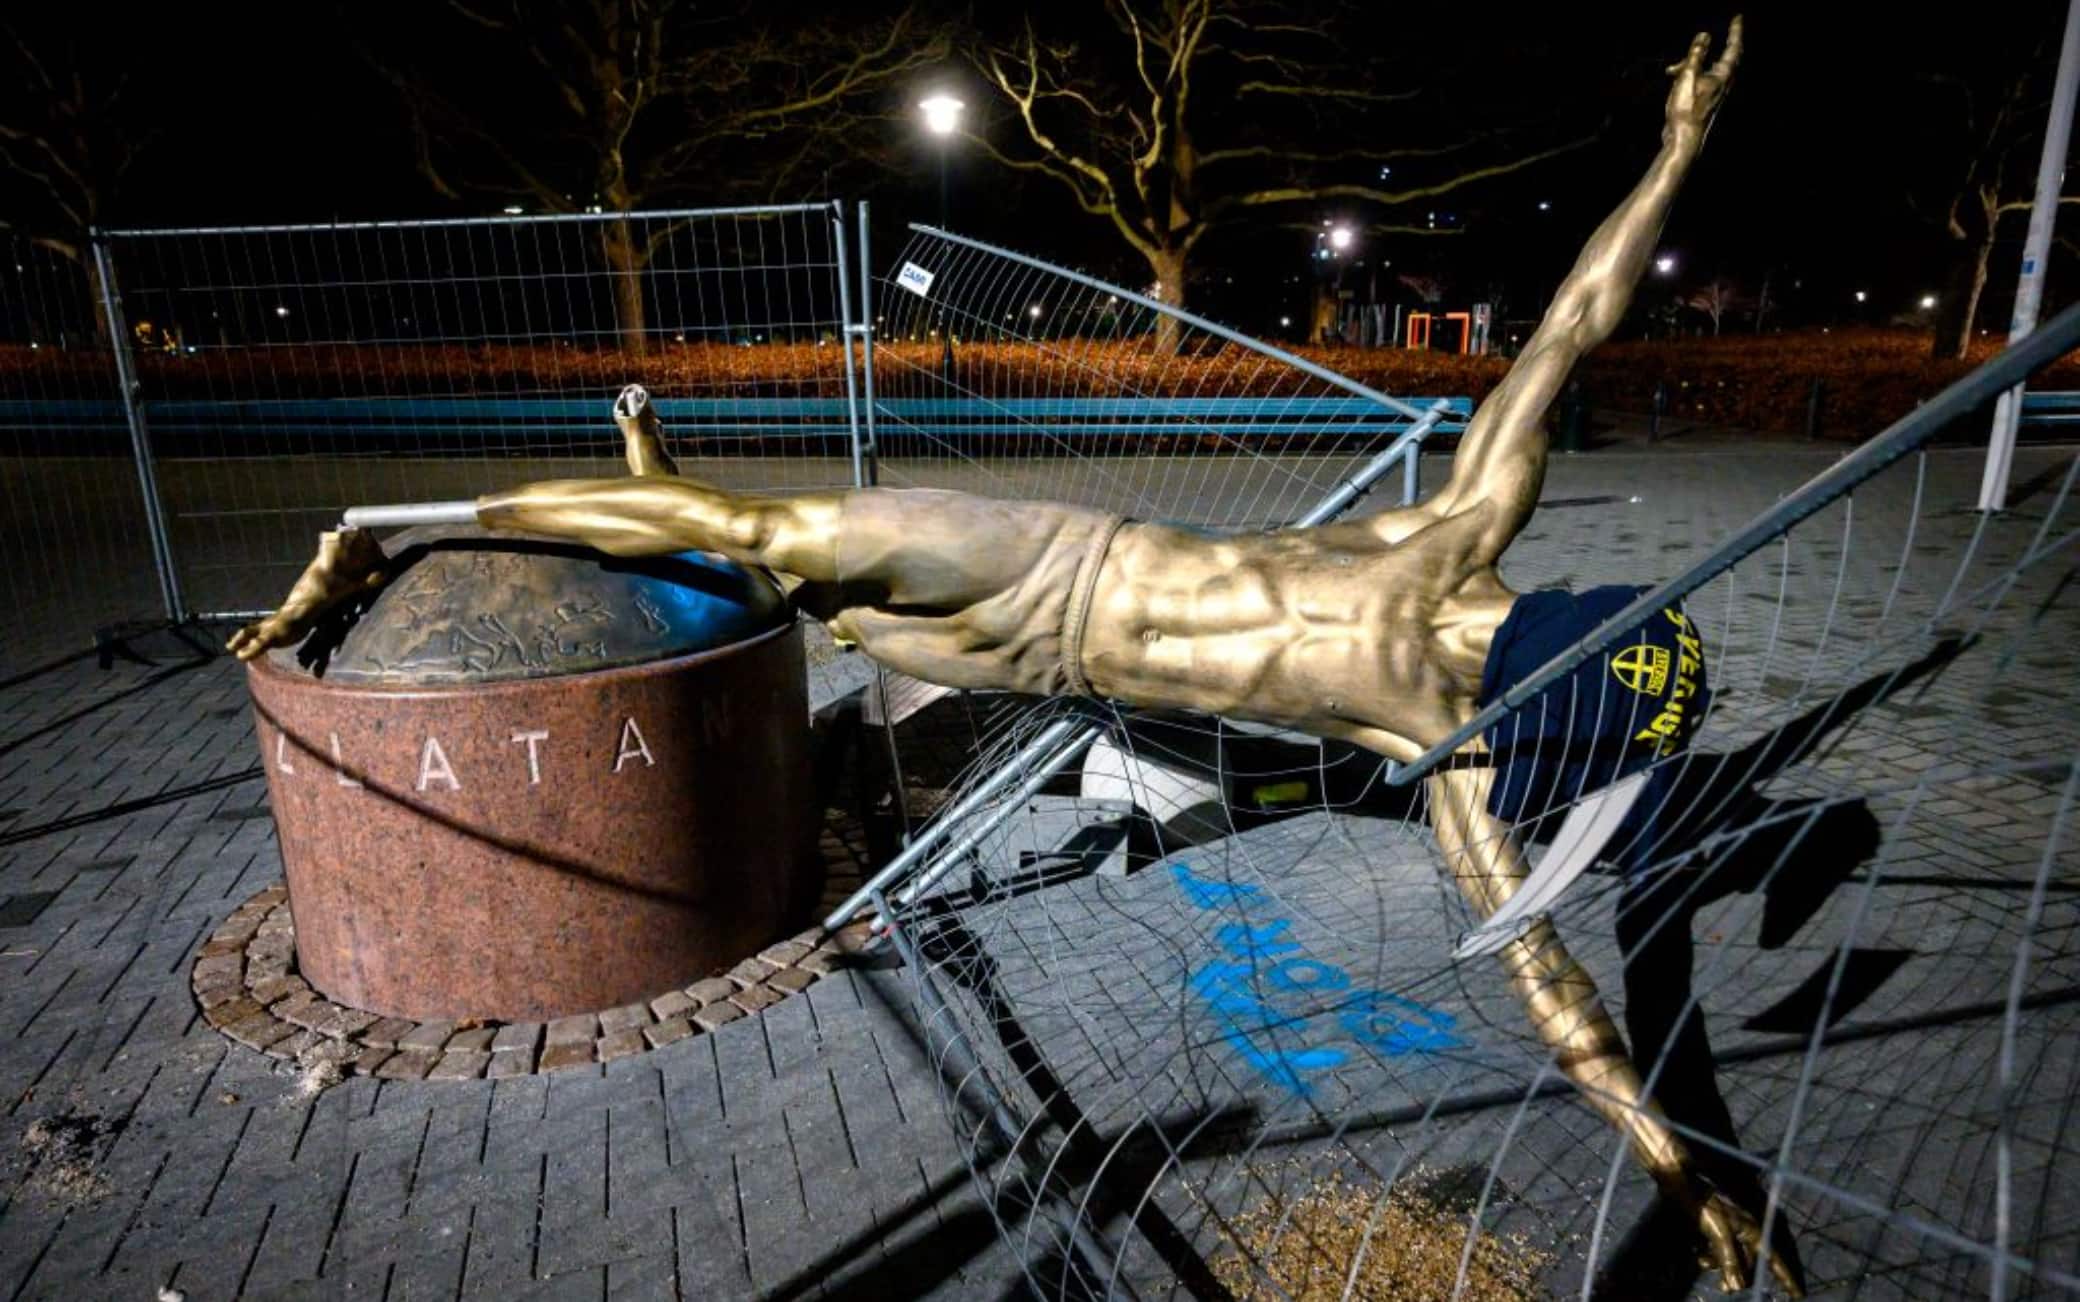 Ibra, statua vandalizzata